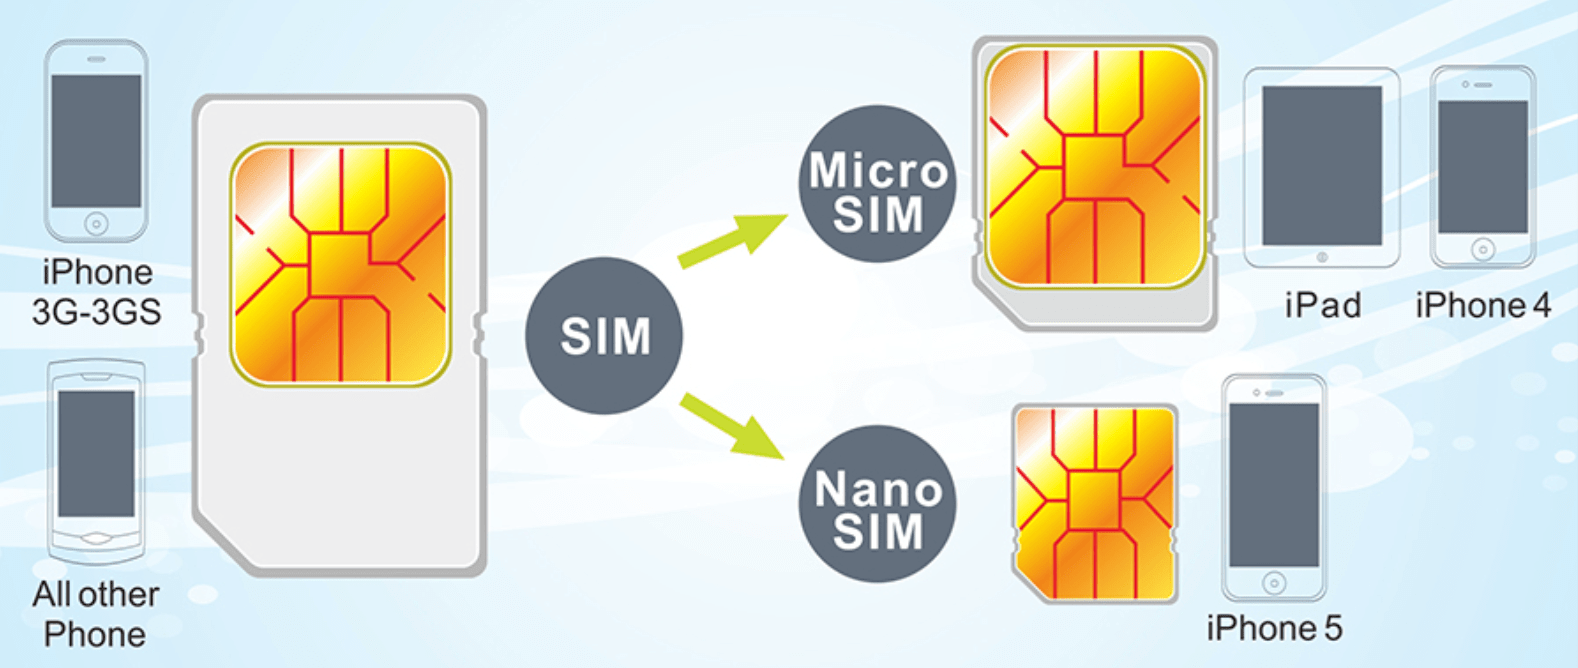 Как использовать микро. Мини сим микро сим нано сим. Mini SIM Micro SIM отличия. SIM Mini Micro Nano. Micro-SIM И Nano-SIM карты отличия.